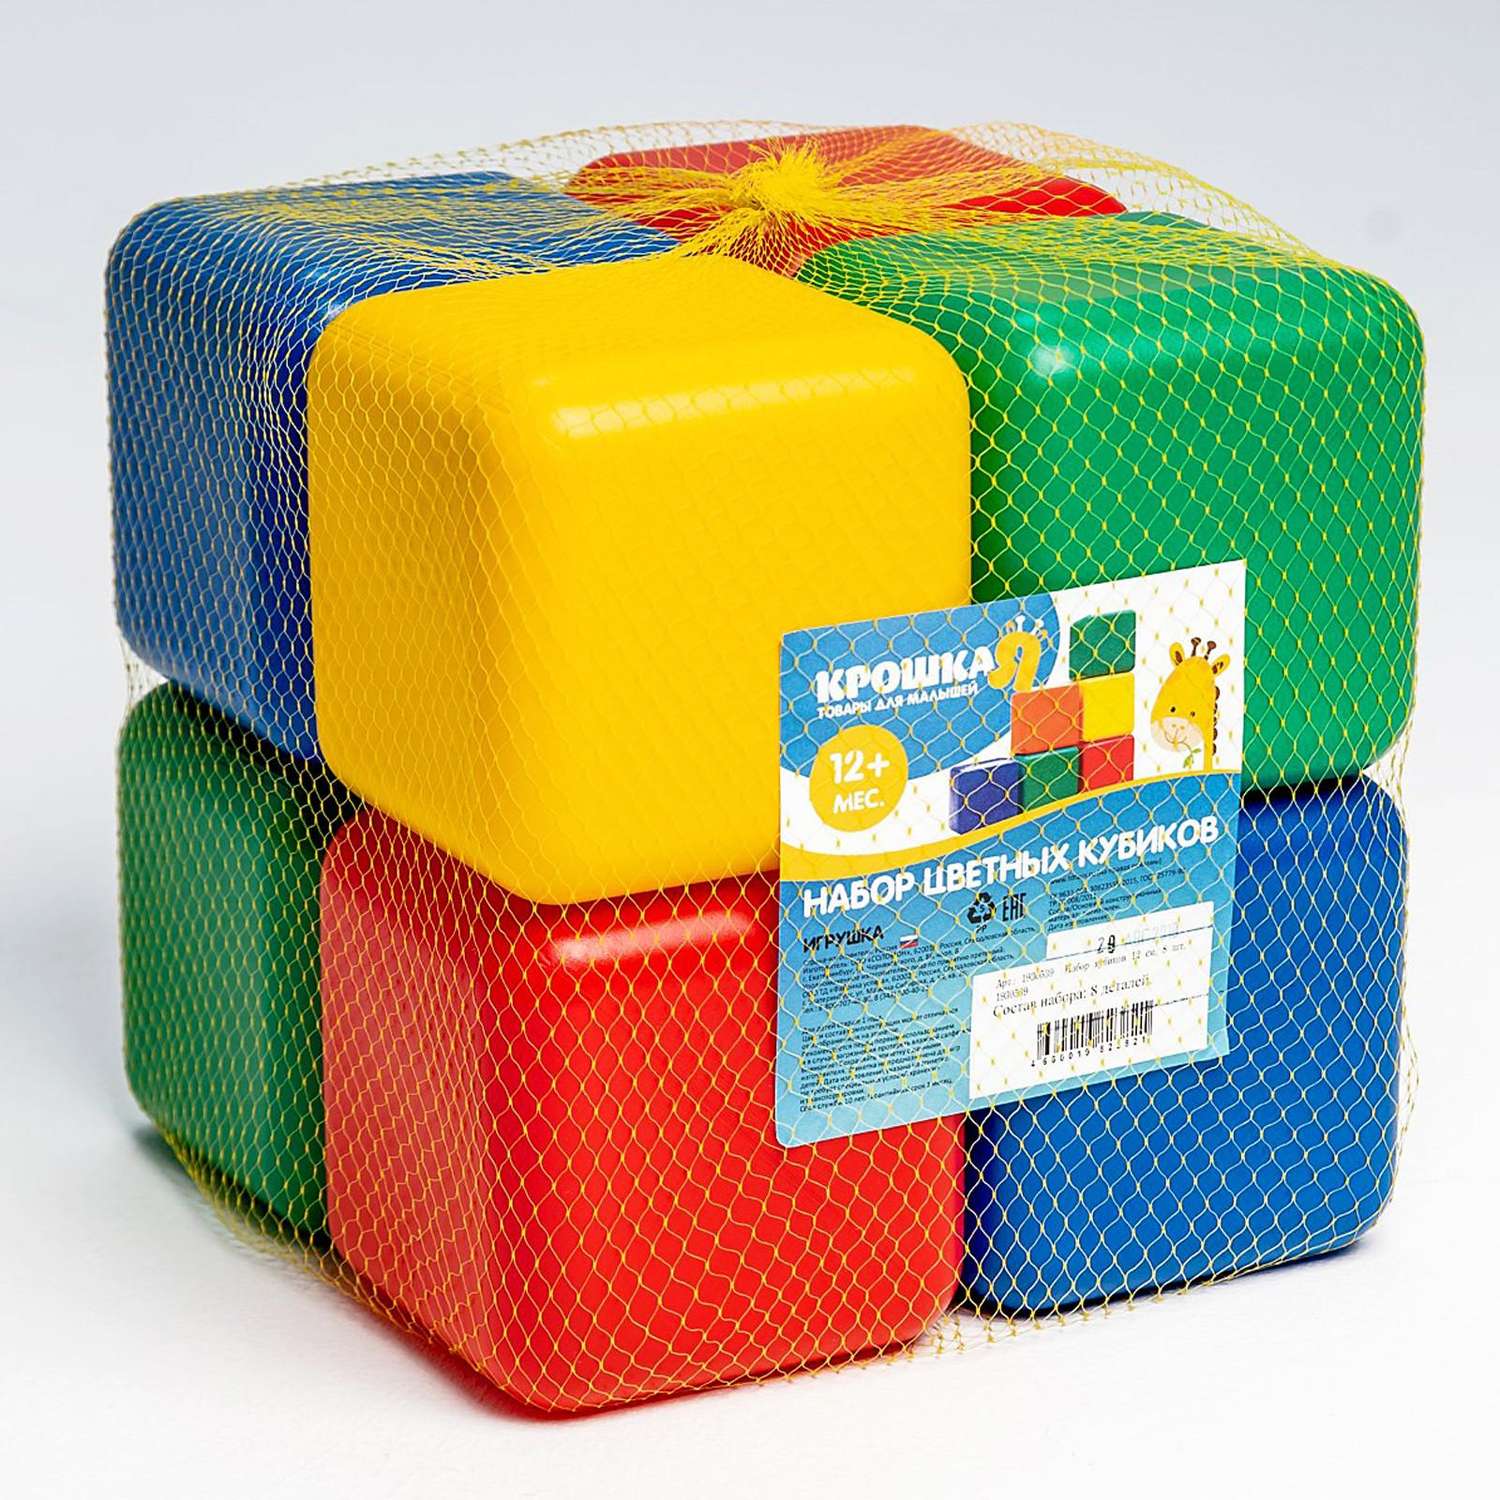 Набор Соломон цветных кубиков 8 штук 12 х 12 см - фото 3